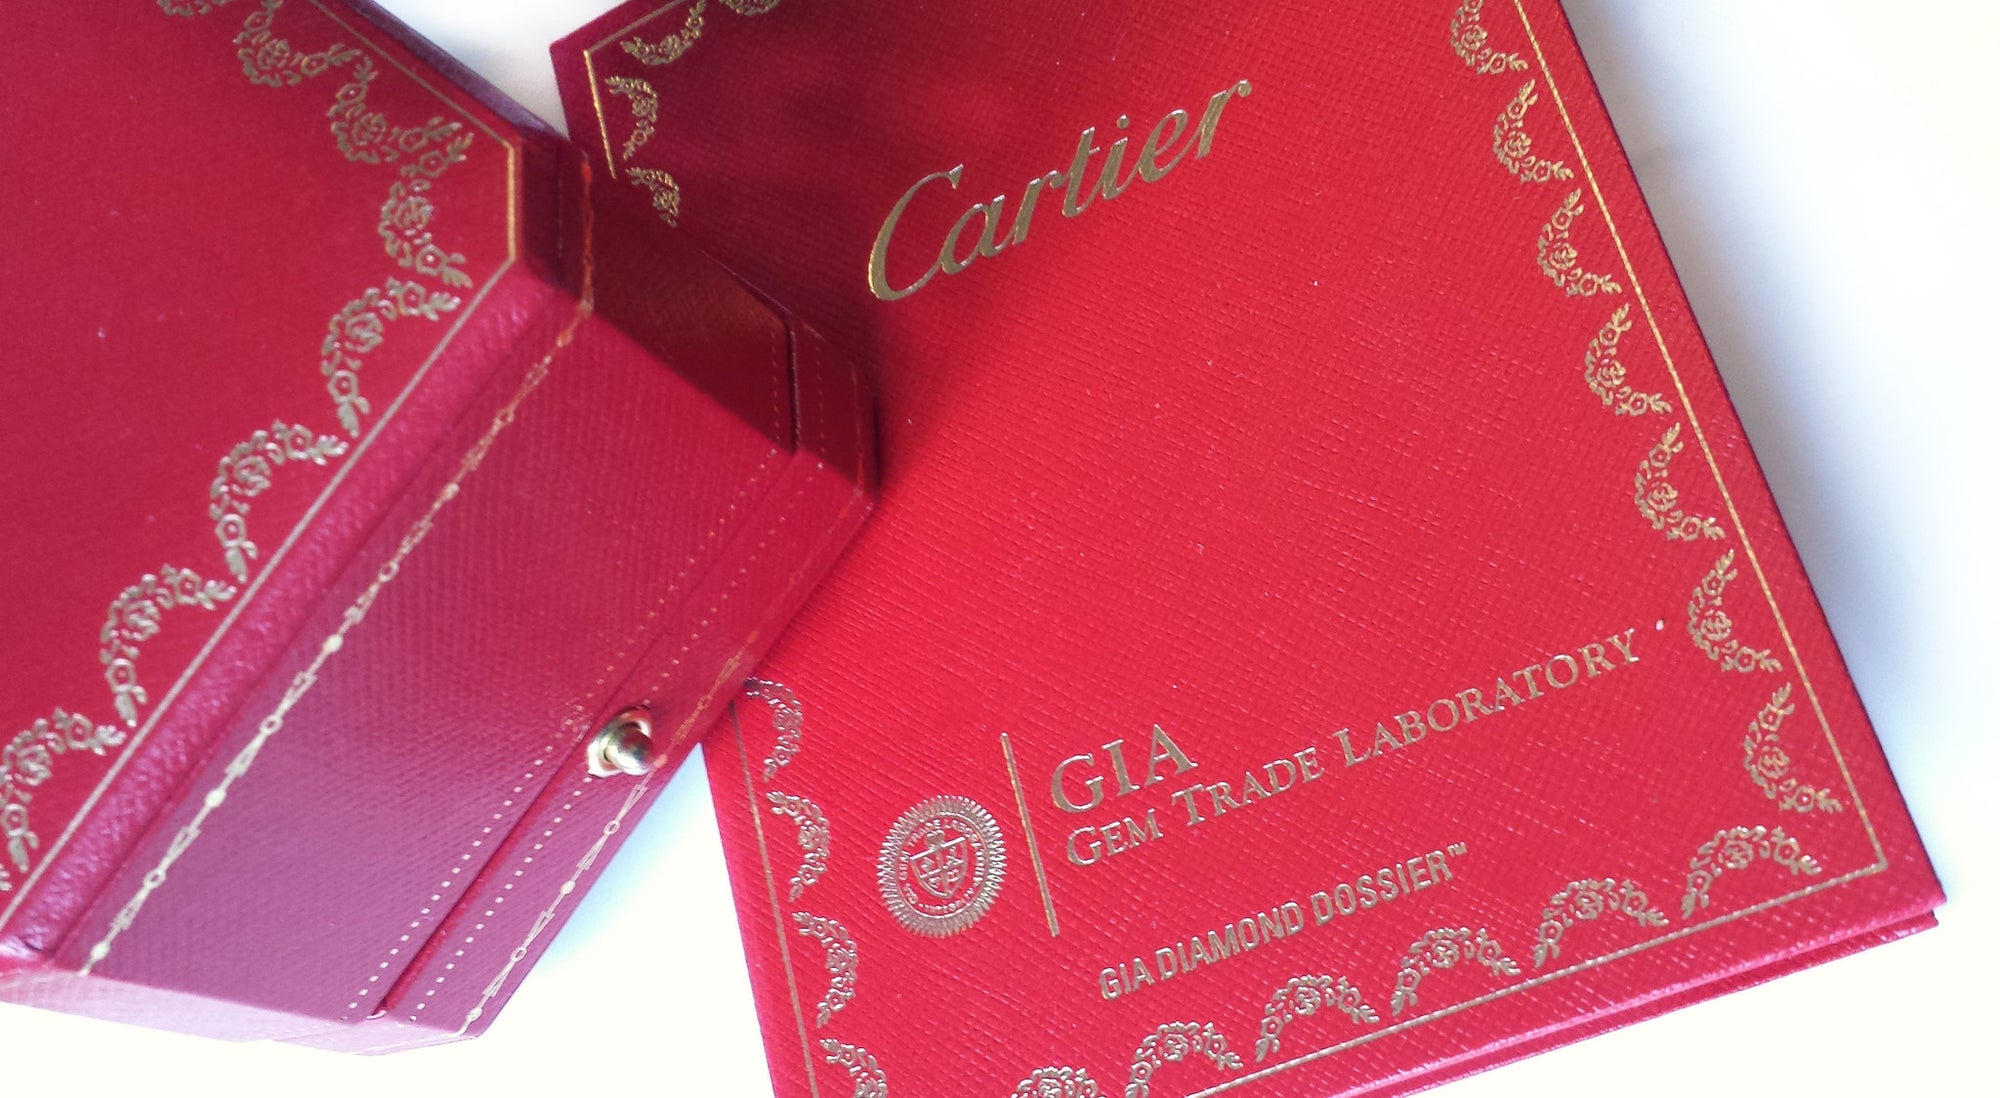 Cartier 0.83ct H/VS1 Round Brilliant Cut 1895 Setting Diamond & Platinum Engagement Ring